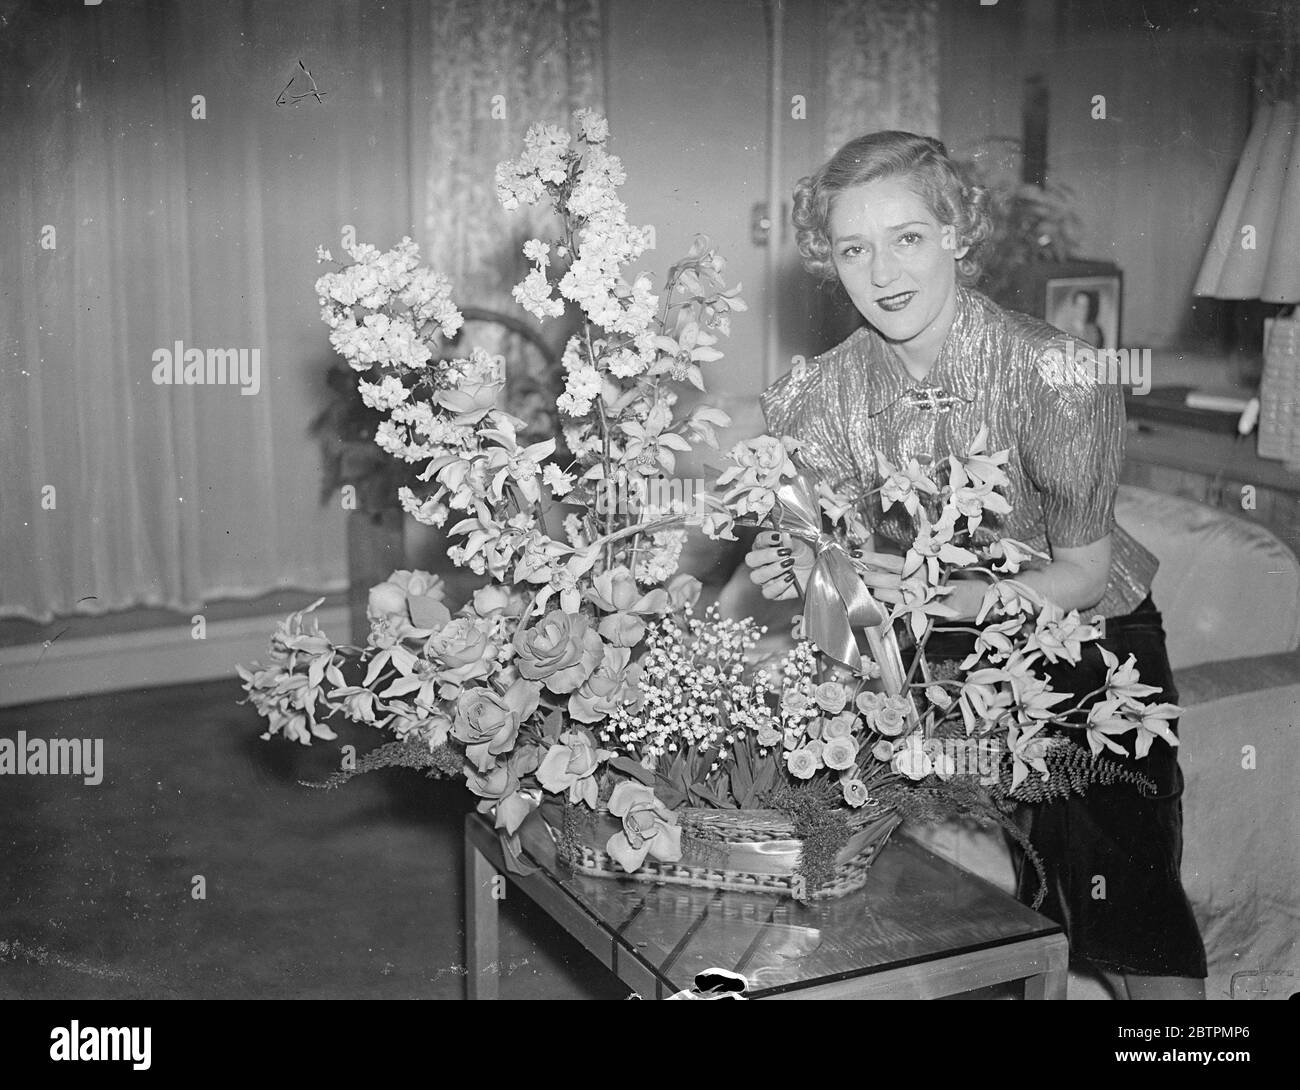 Blumen von ihrem Verlobten. Mary Pickford gibt Empfang in London. Mary Pickford, die "Welt" s Sweetheart, die nach London kam, um ihren Verlobten Charles ' Buddy ' Rogers, der Filmschauspieler und Bandleader, zu begleiten, gab einen Empfang in ihrem Londoner Hotel. Sie plant, zur Krönung in London zu bleiben. Foto zeigt, Mary Pickford arrangiert einen Korb mit Blumen, schickte sie von Buddy Rogers, in ihrer Suite bei Claridge ' s. 10 März 1937 Stockfoto